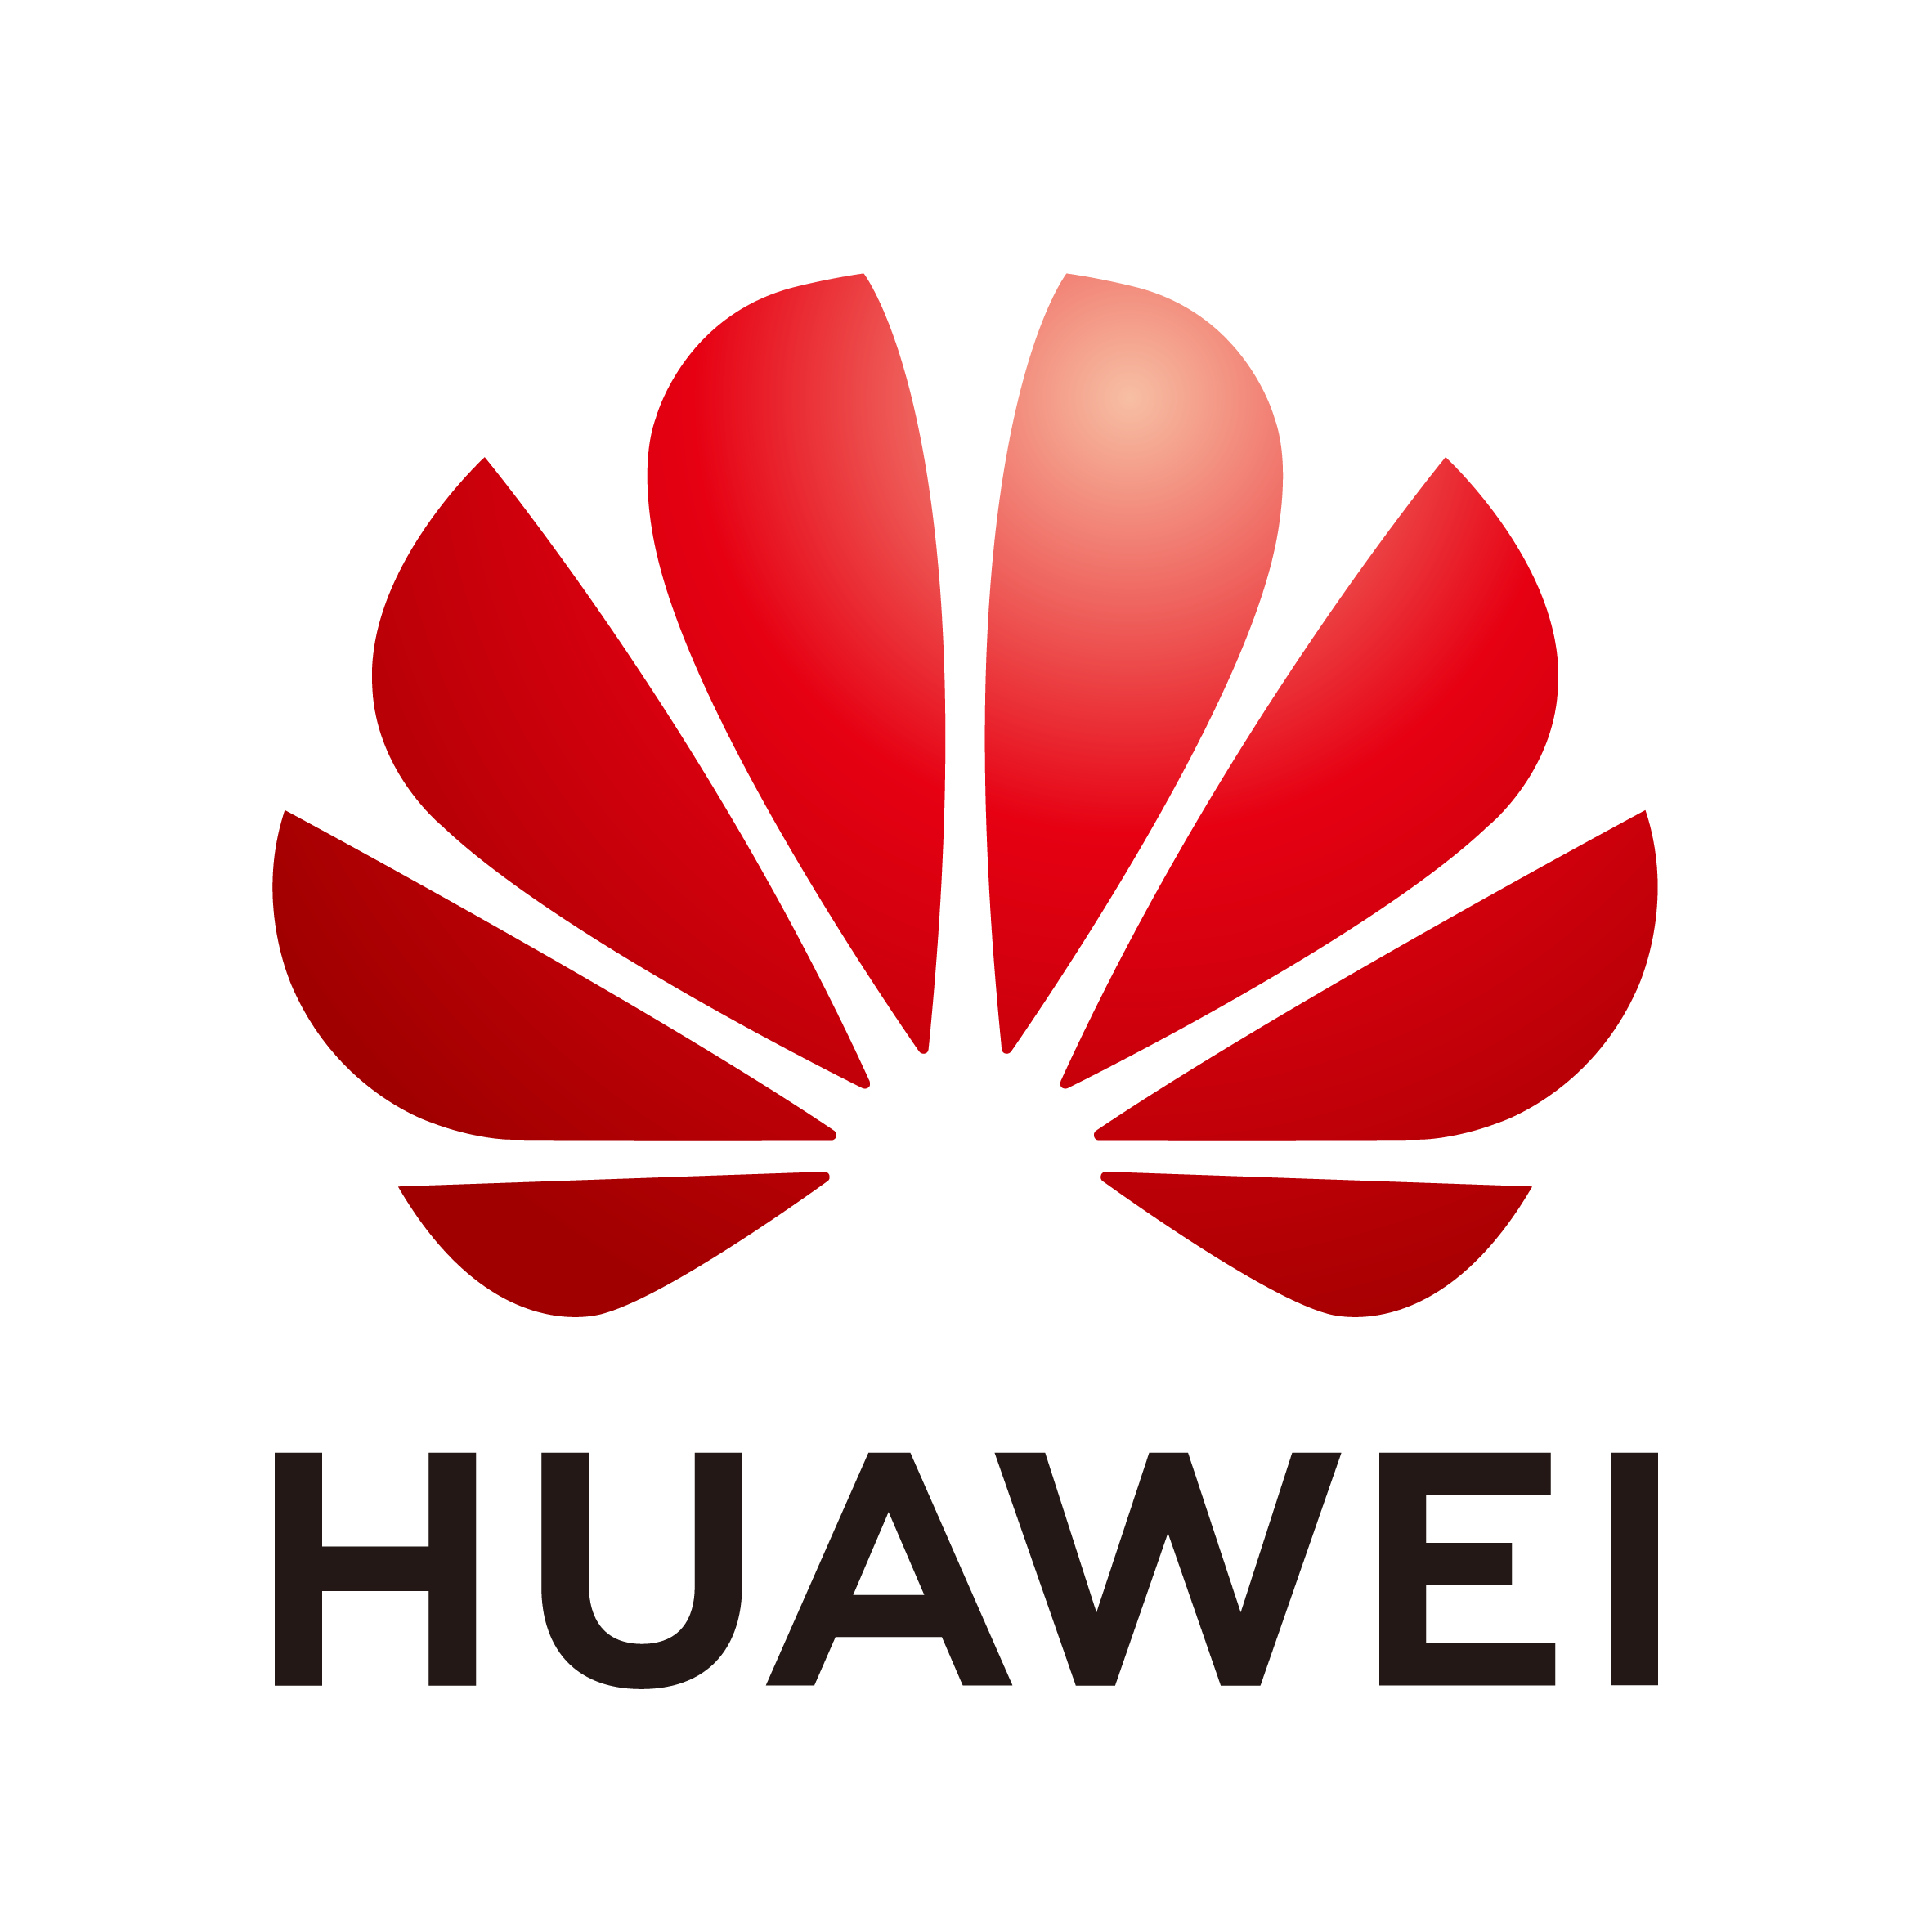 香港電訊, Huawei, 卓越貢獻合作夥伴獎 2020